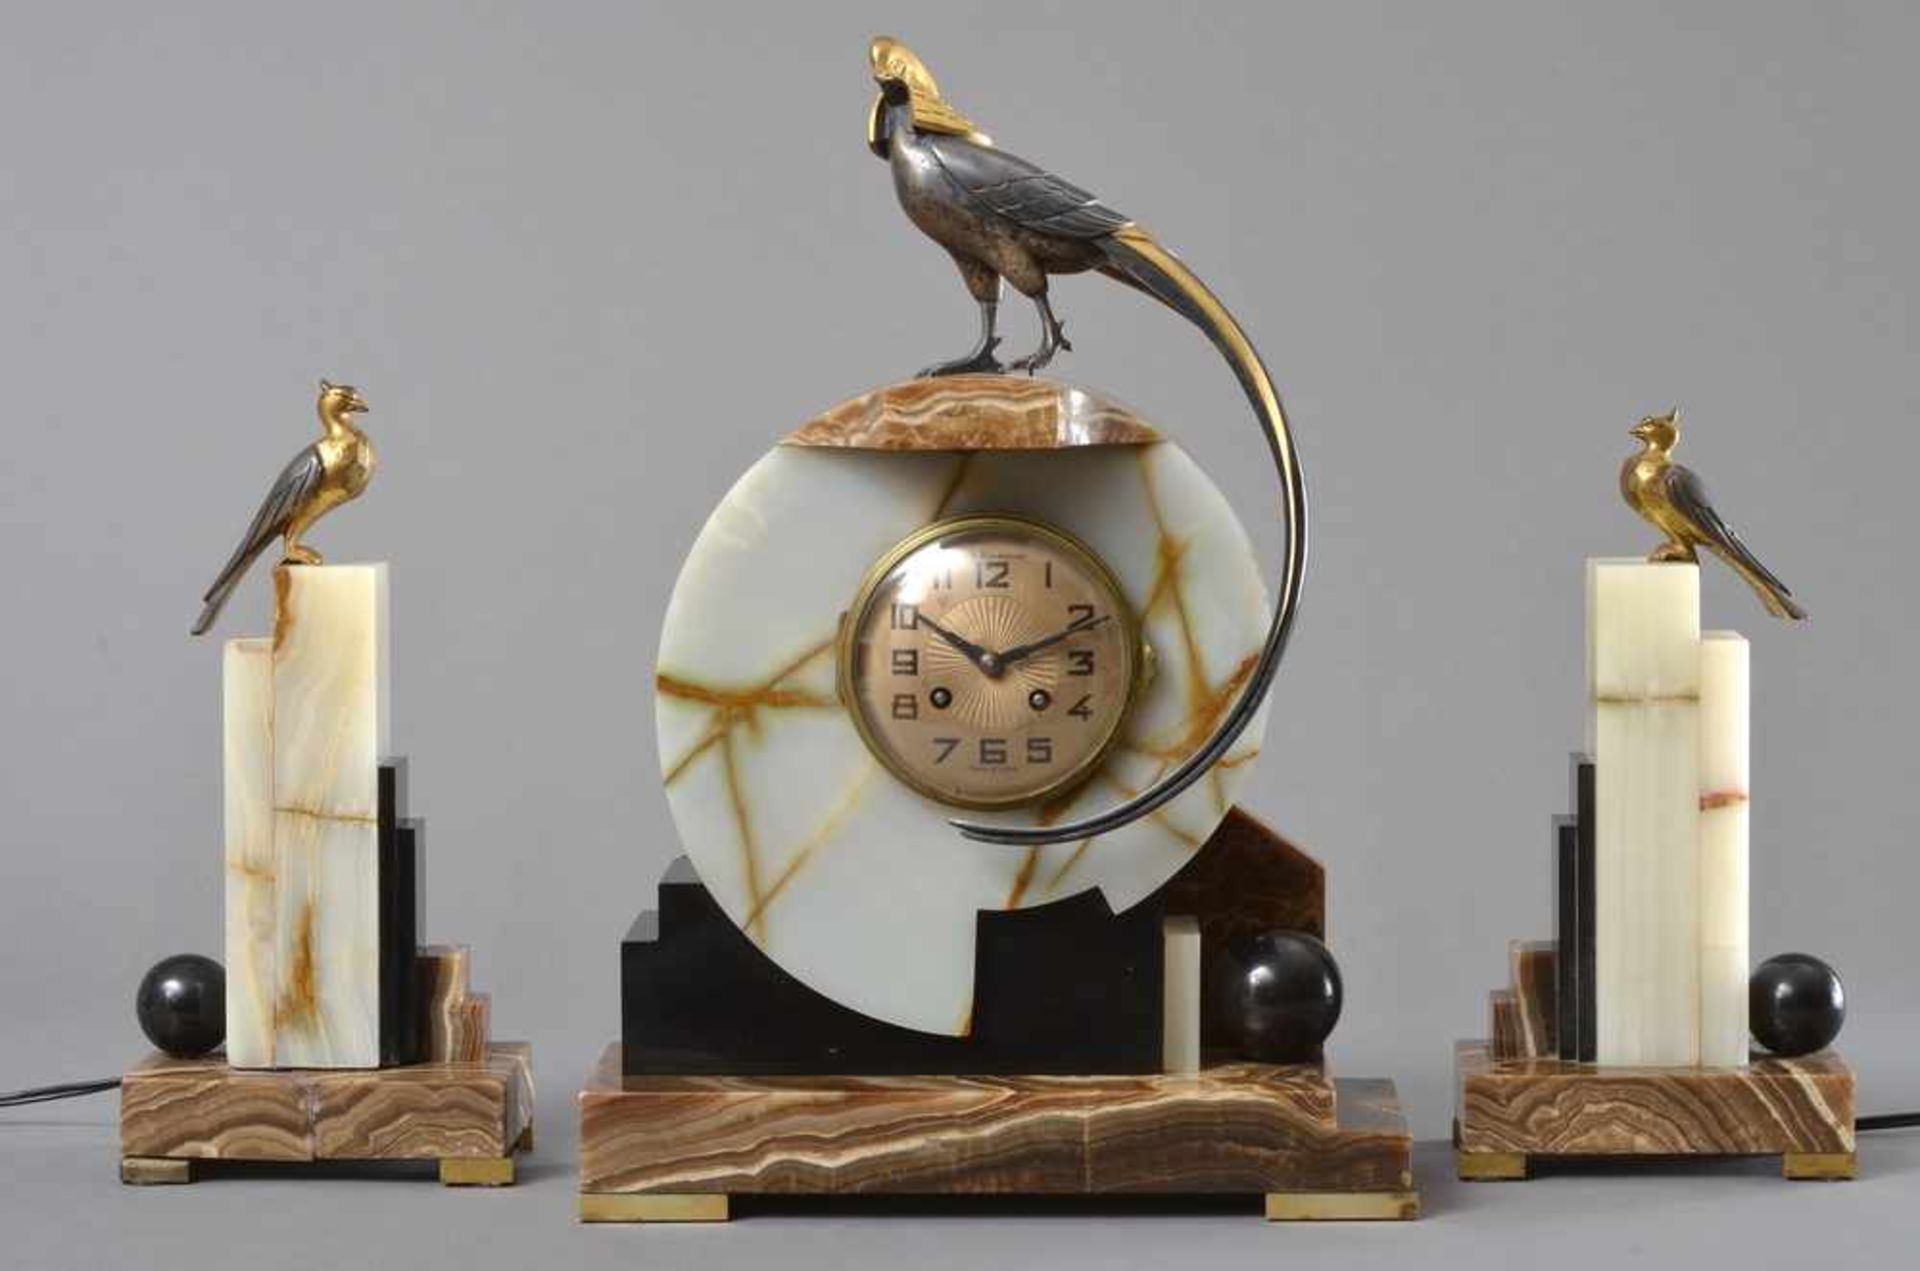 3 Teile Art Deco Uhren Ensemble: Kaminuhr und 2 elektrifizierte Beisteller, dreifarbiges Onyx mit